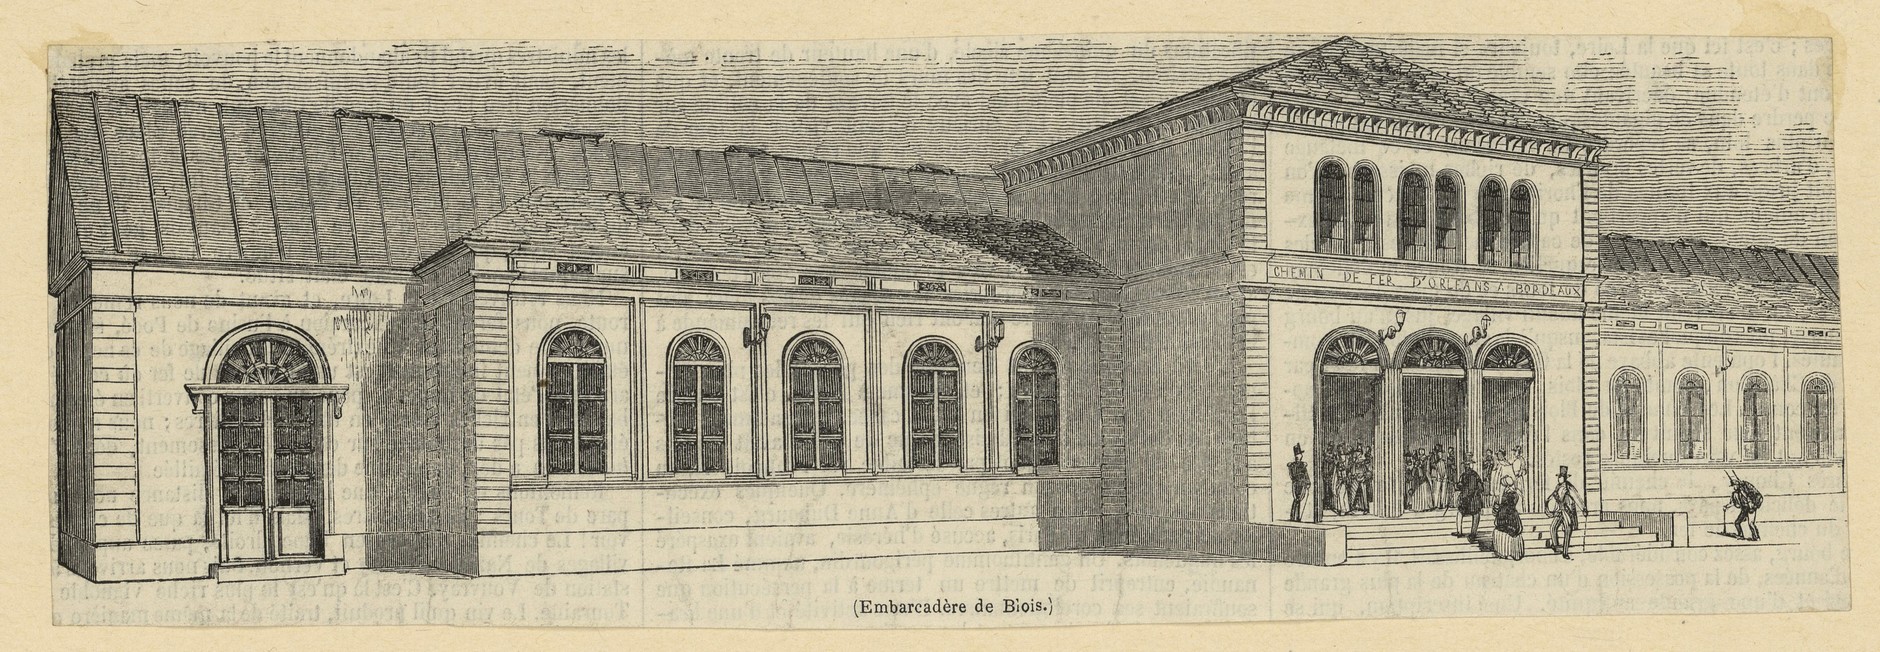 L'embarcadère de Blois, gravure sur bois vers 1850